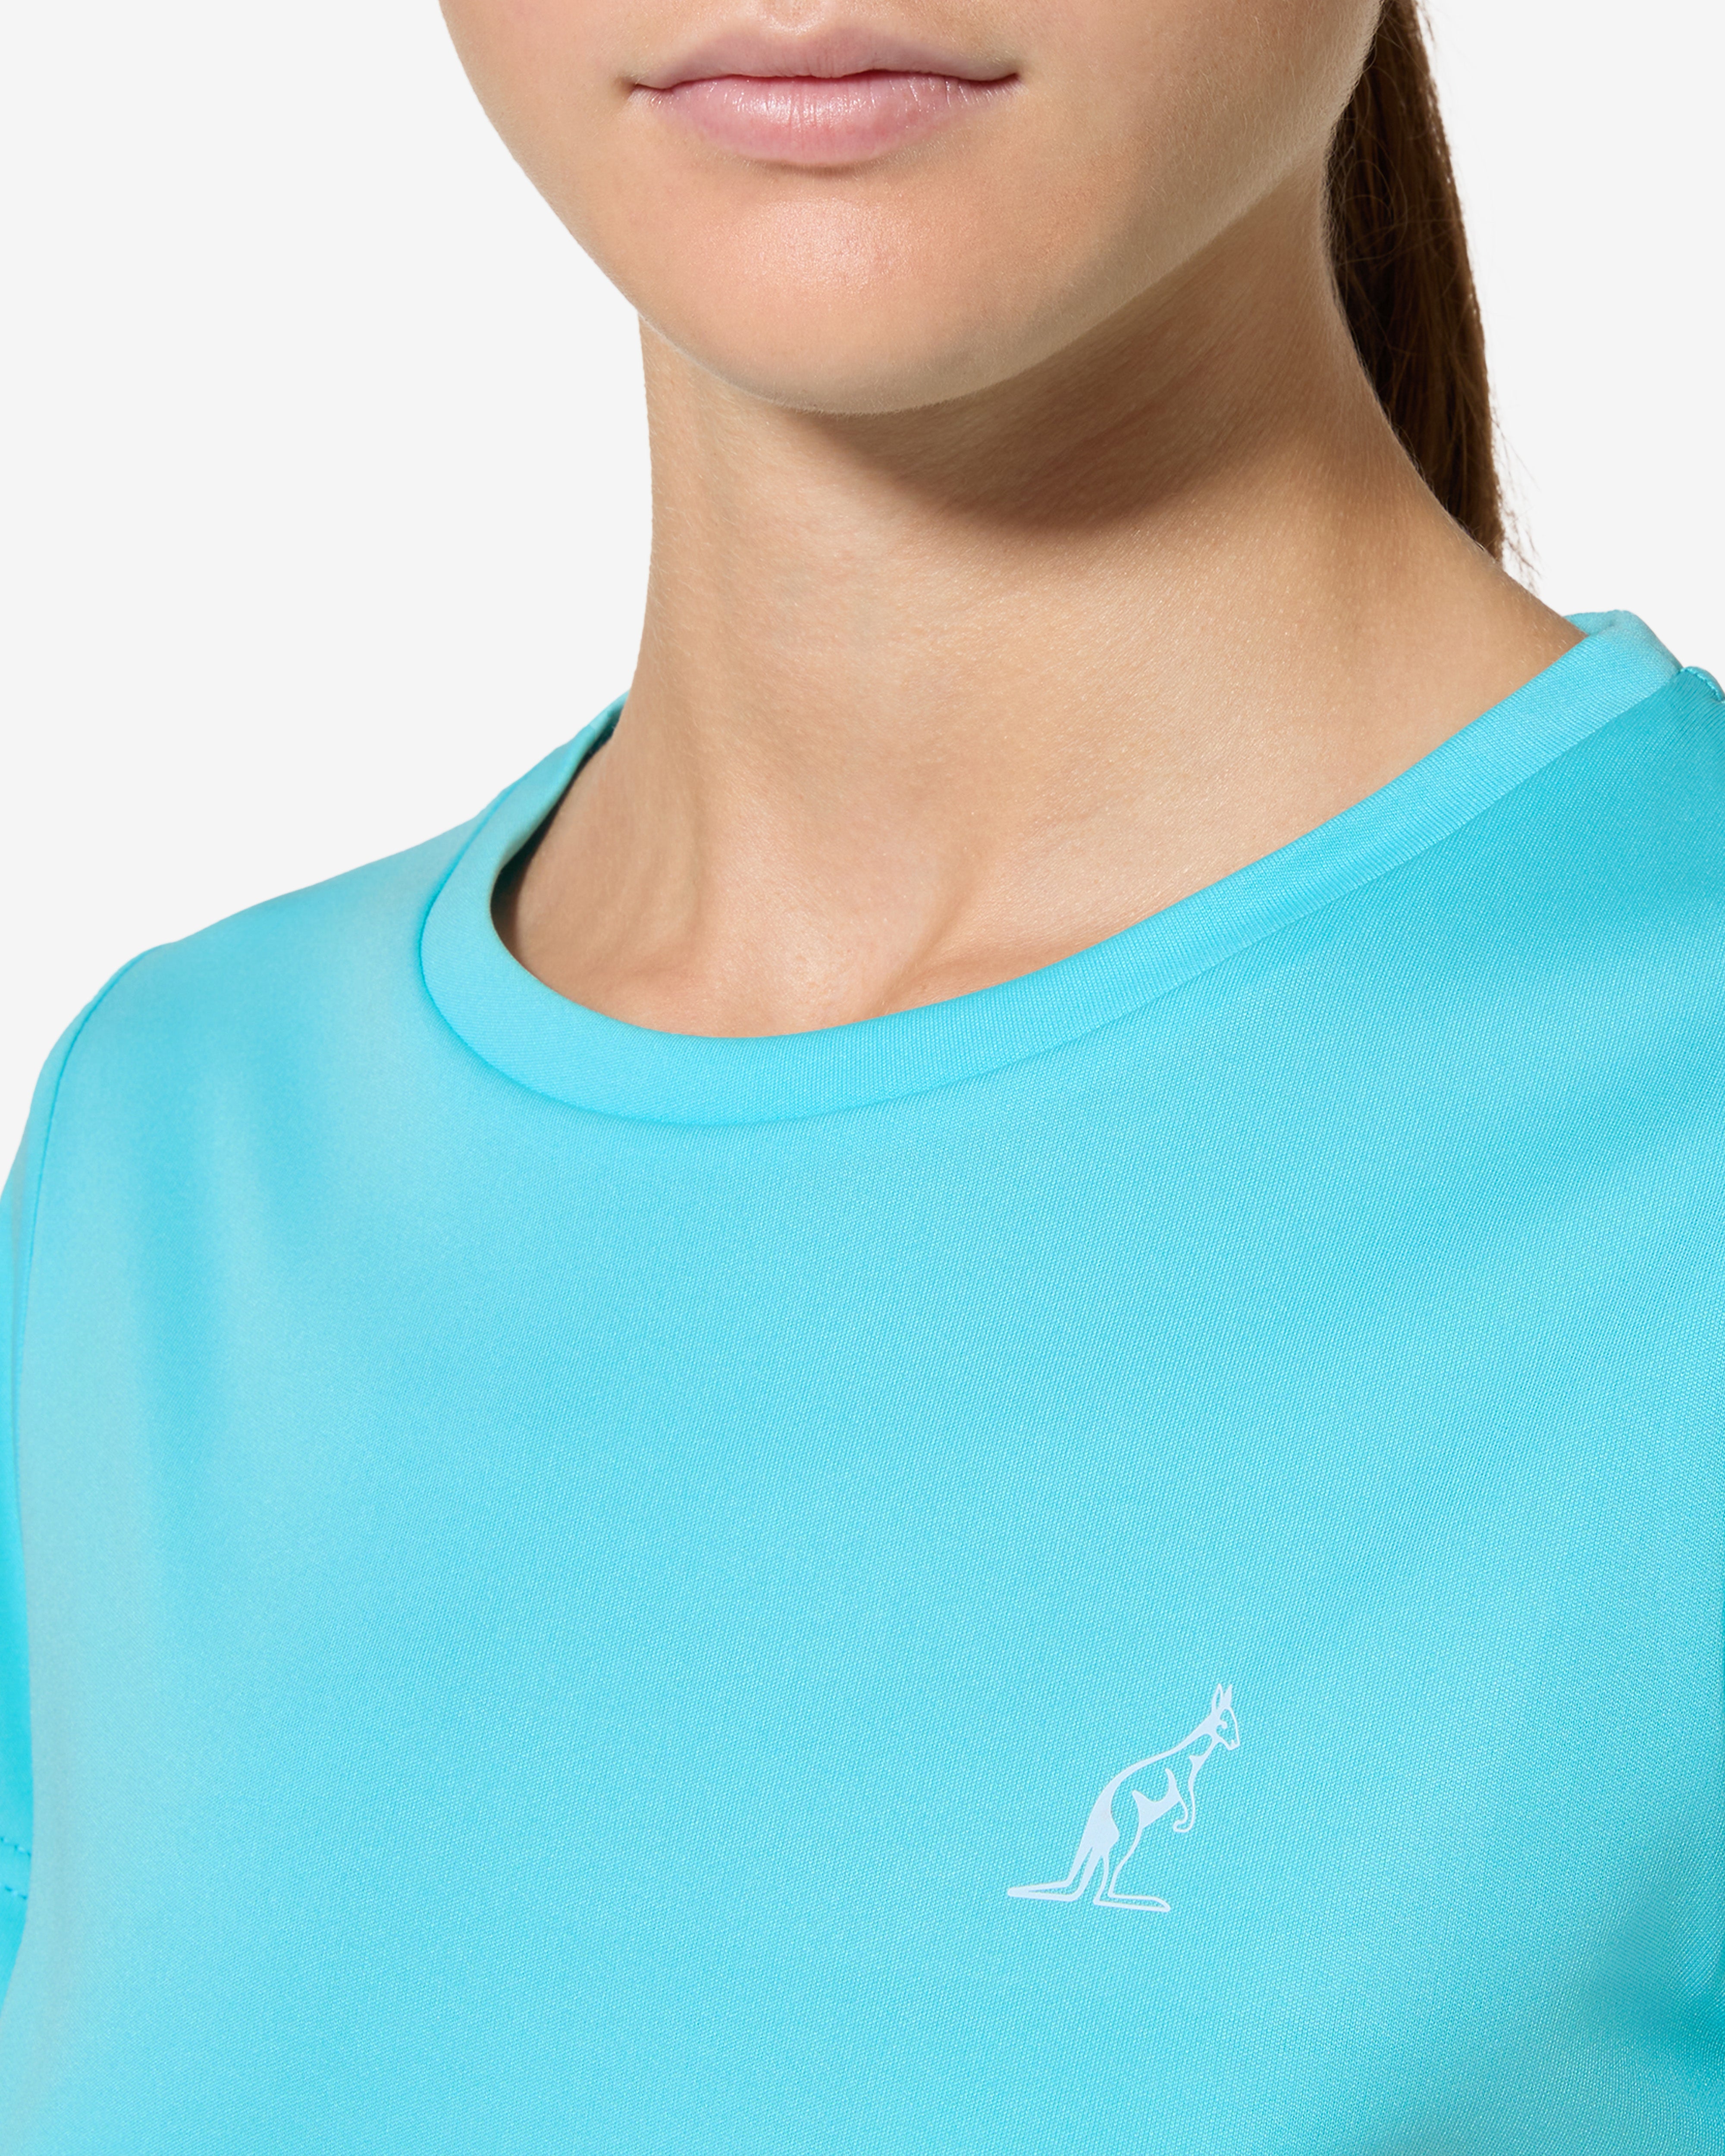 Essence T-shirt: Australian Tennis